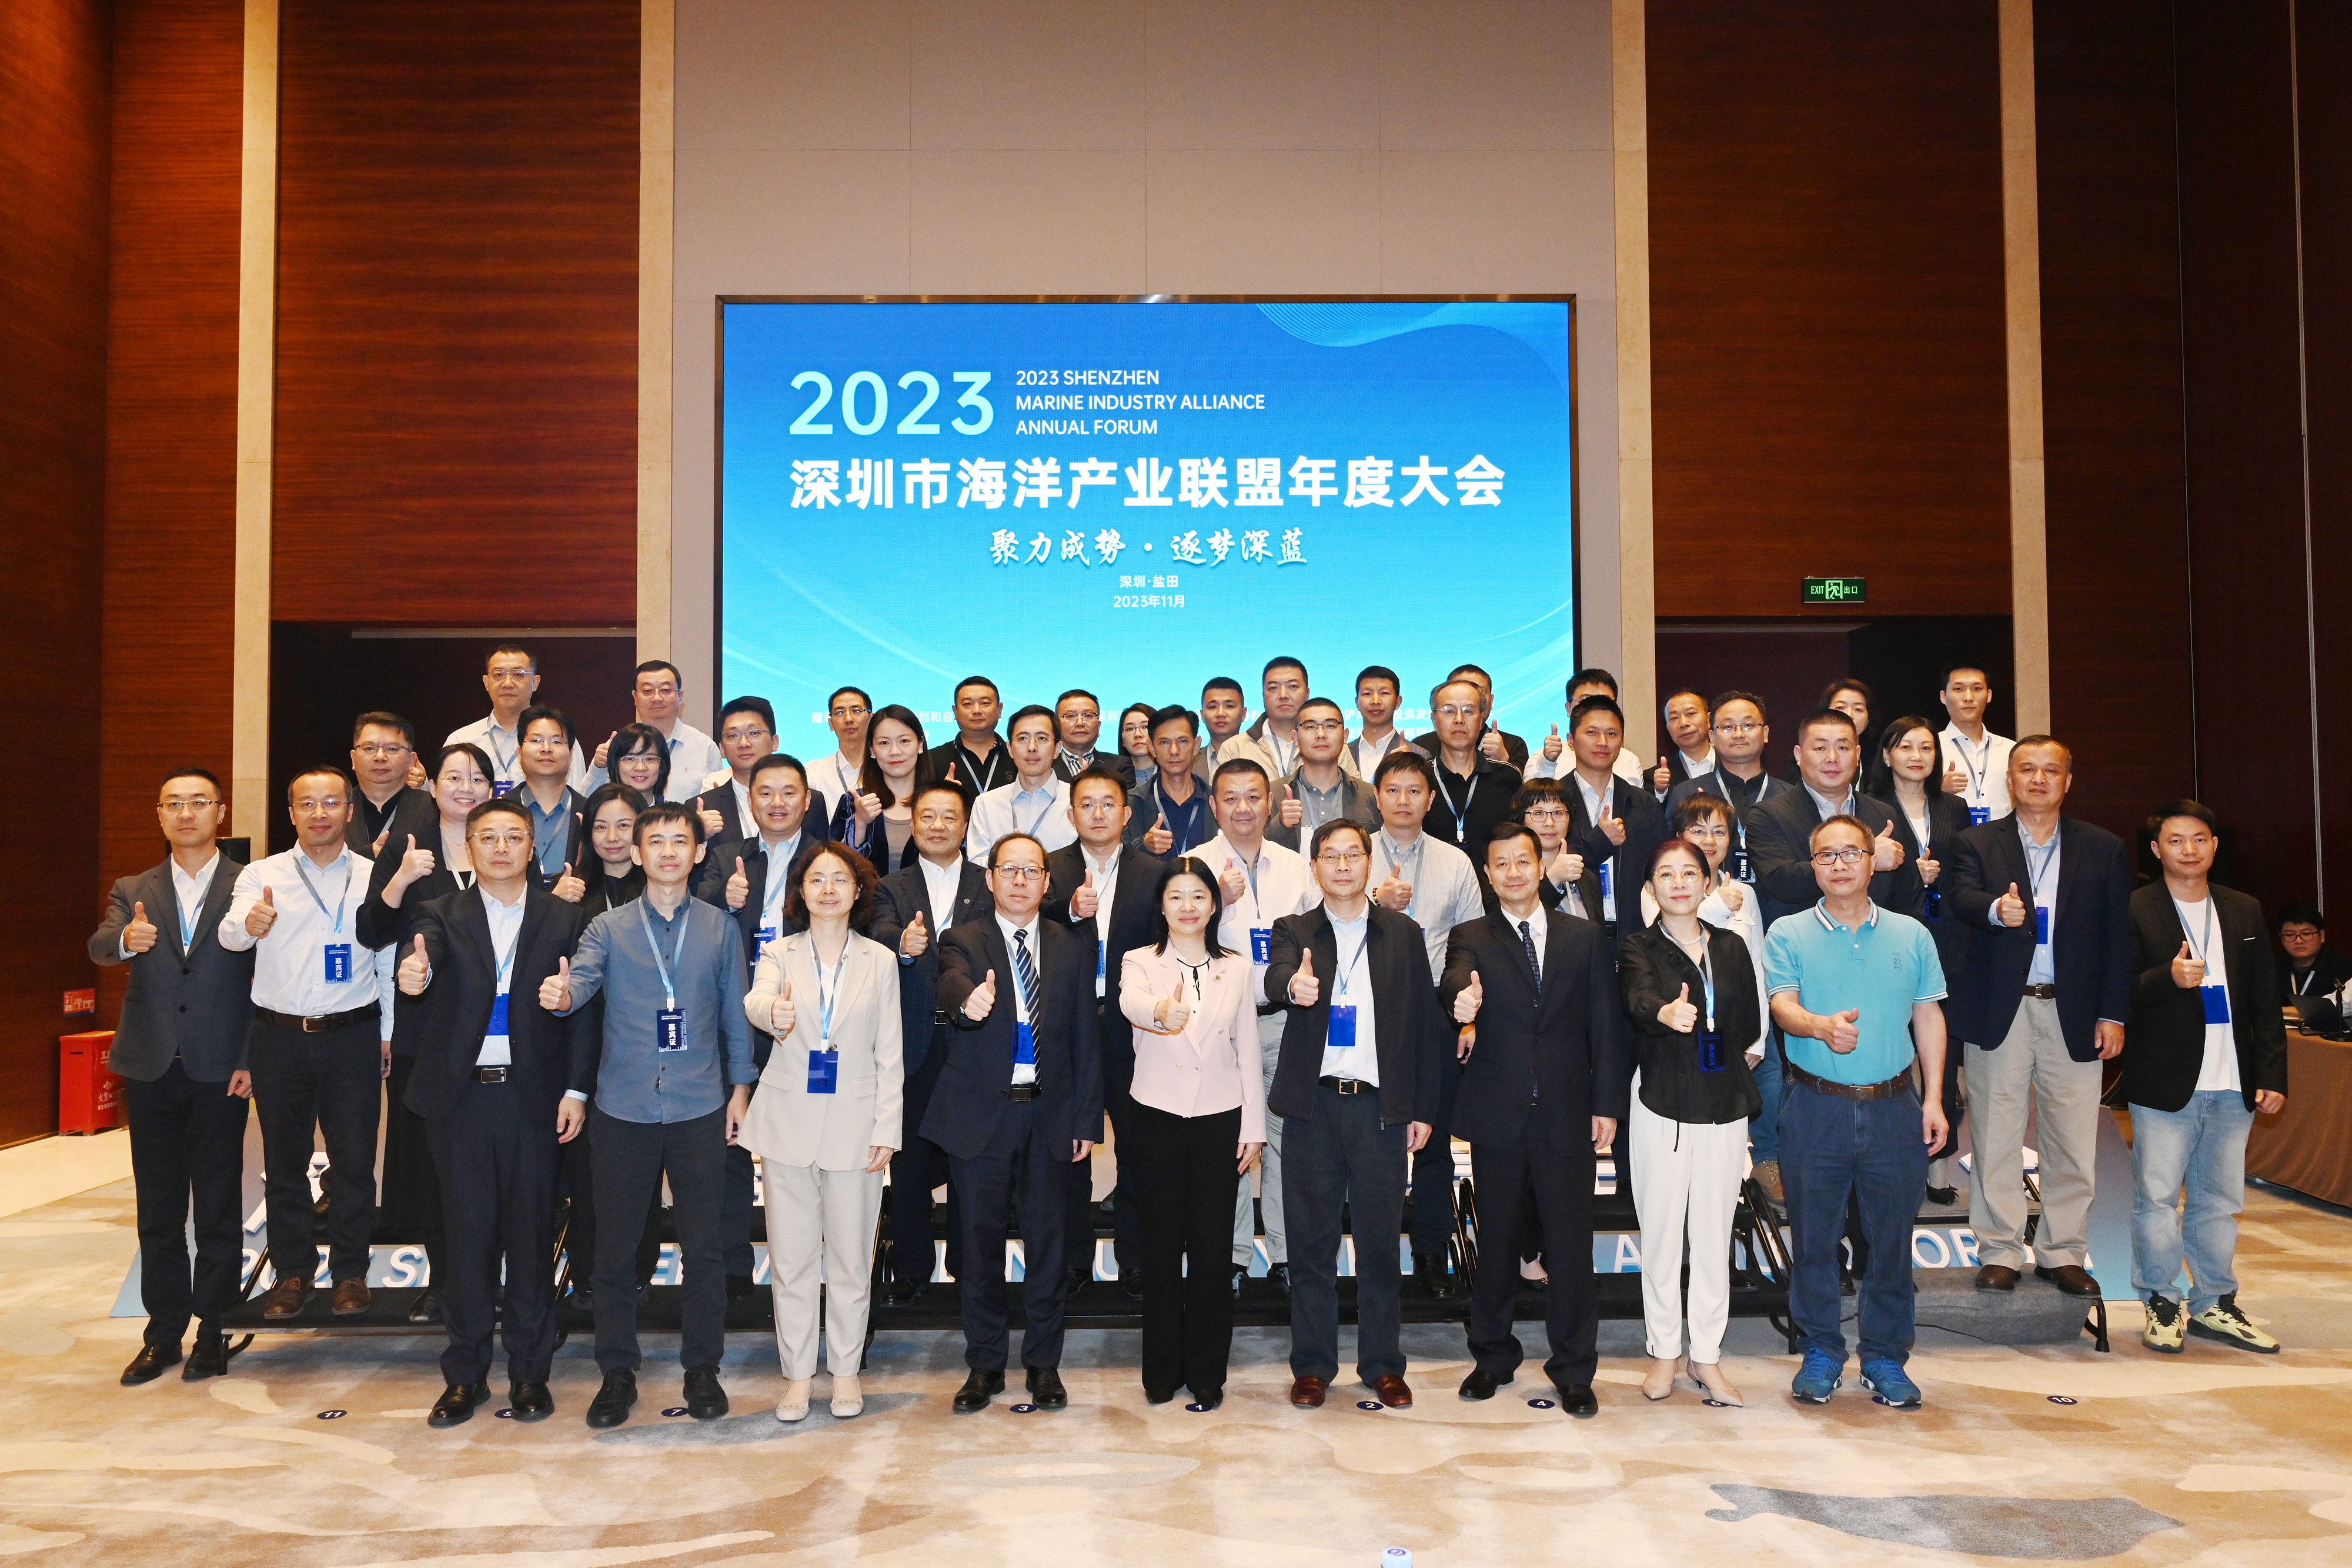 18新利【中国】有限公司官网成功举办举办深圳市海洋产业联盟2023年度大会